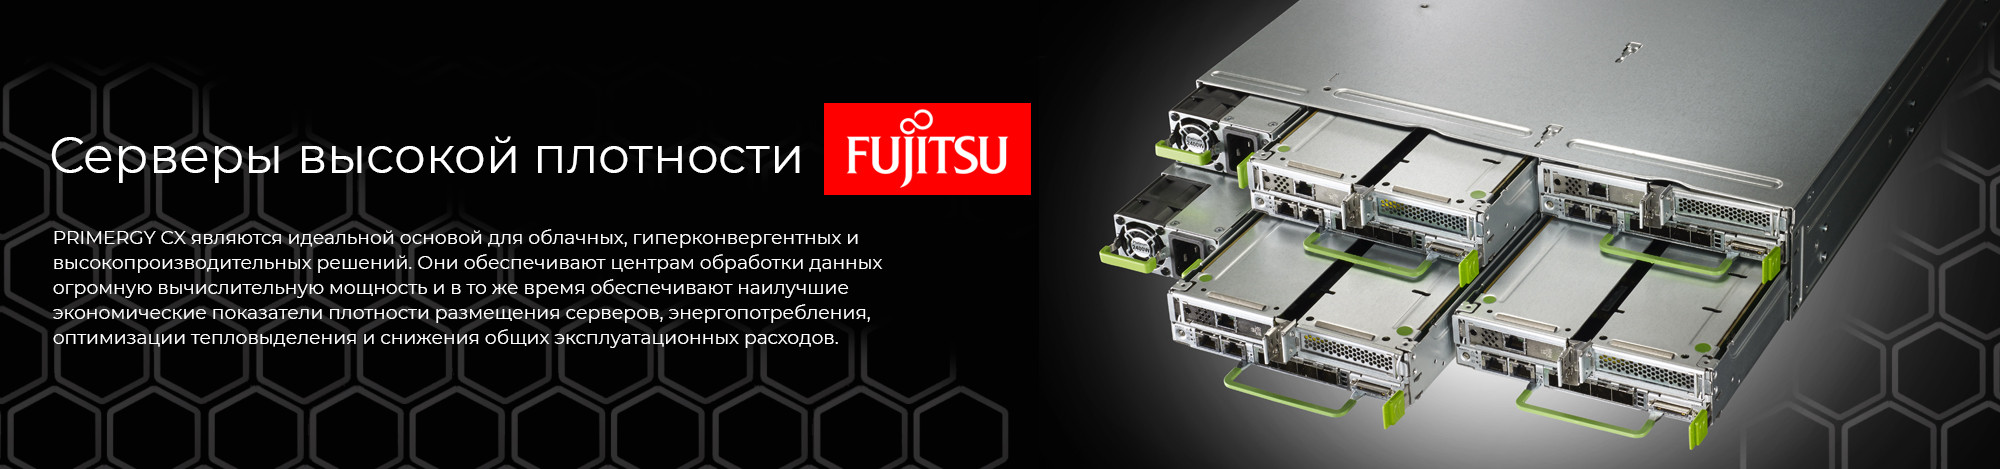 Серверы-высокой-плотности-Fujitsu-CX